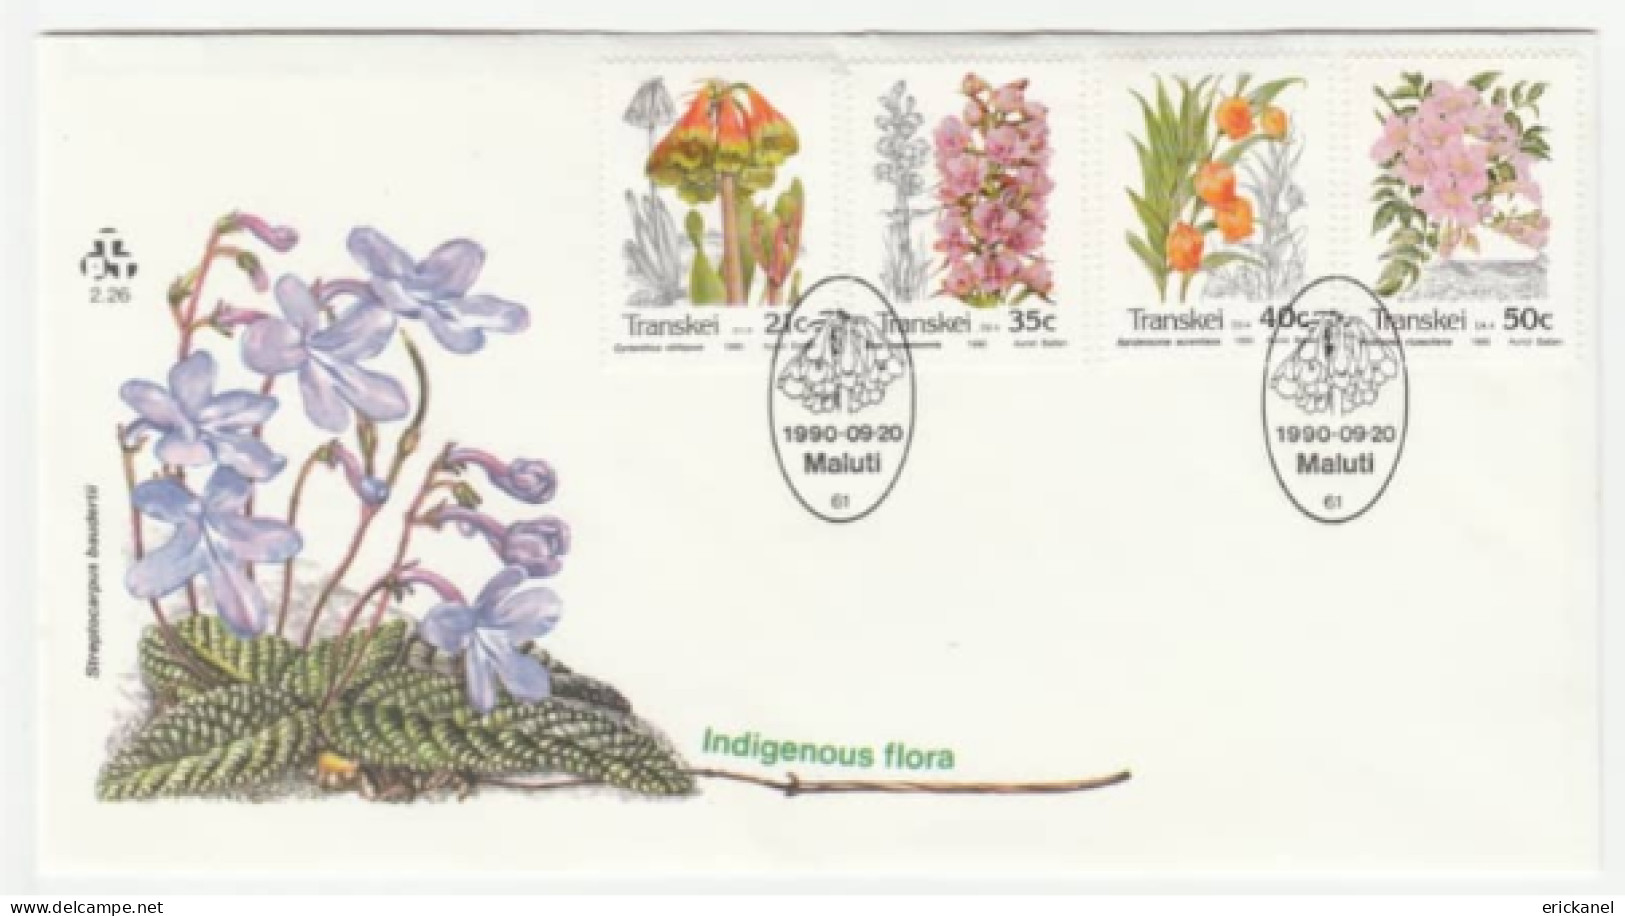 1990 Transkei Indigenous Flora FDC 2.26 - Transkei